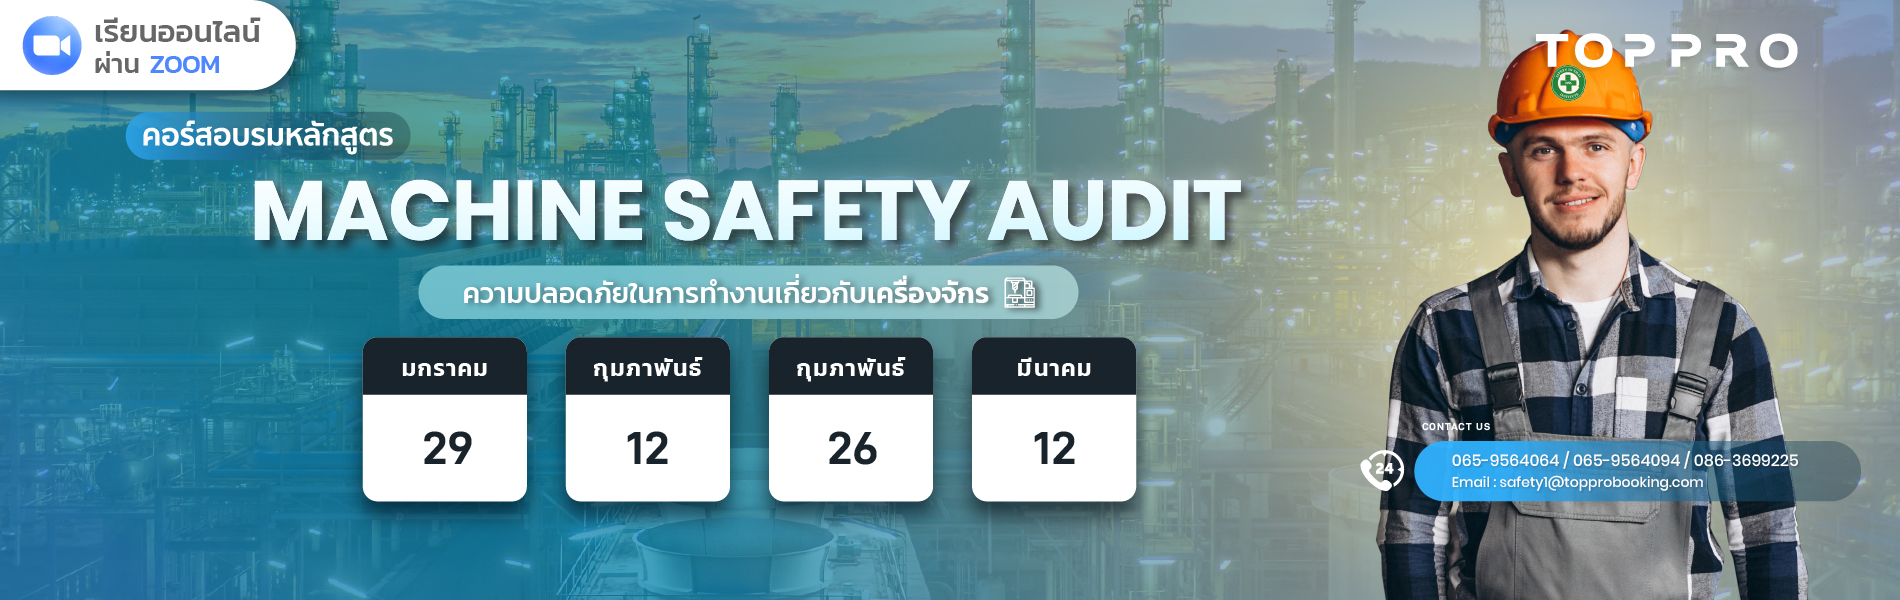 ความปลอดภัยในการทำงานเกี่ยวกับเครื่องจักร(machine safety audit)